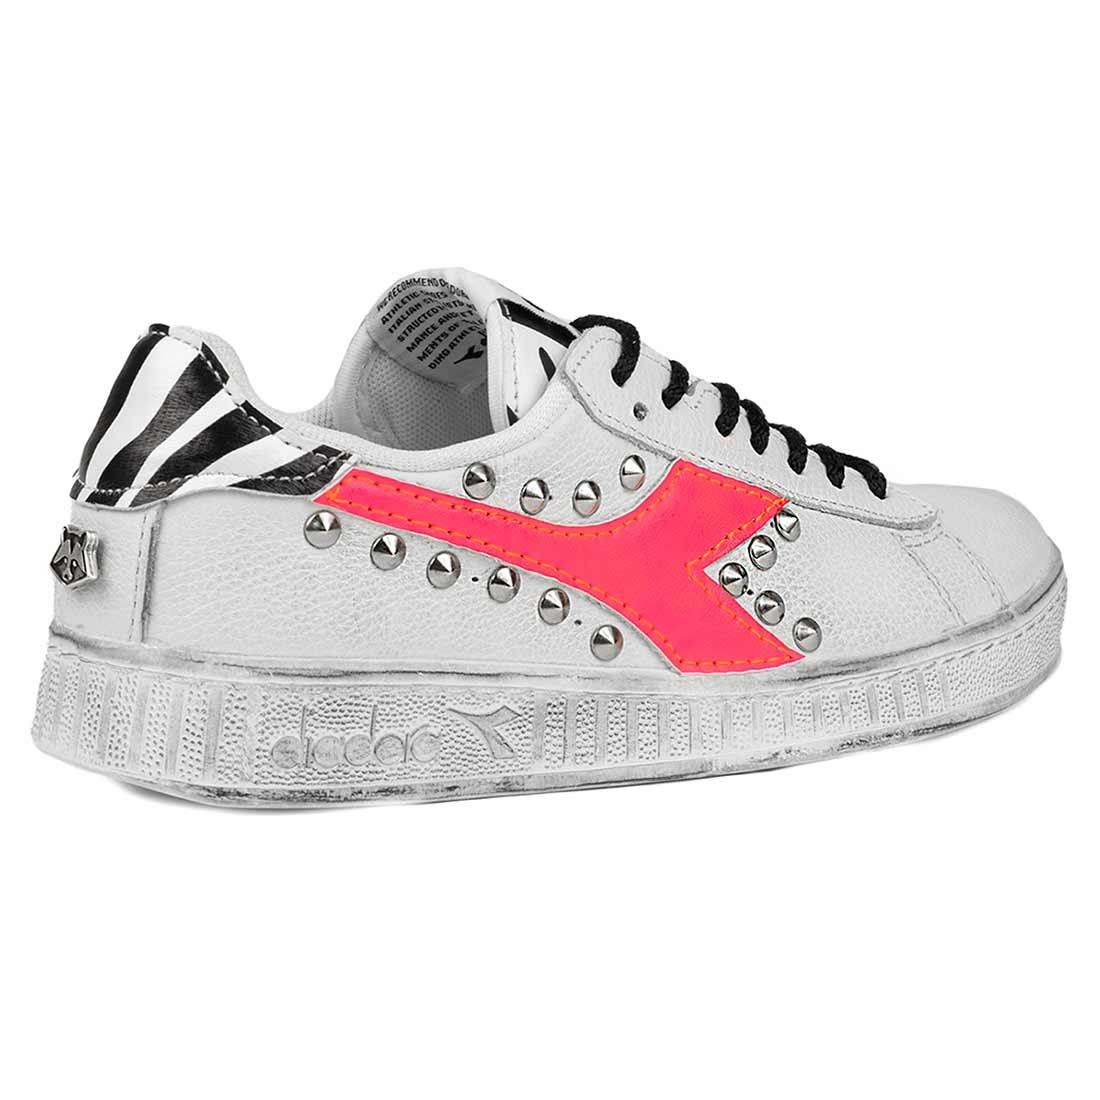 custom sneakers diadora colore rosa fosforescente fluo borchie ed inserti zebra